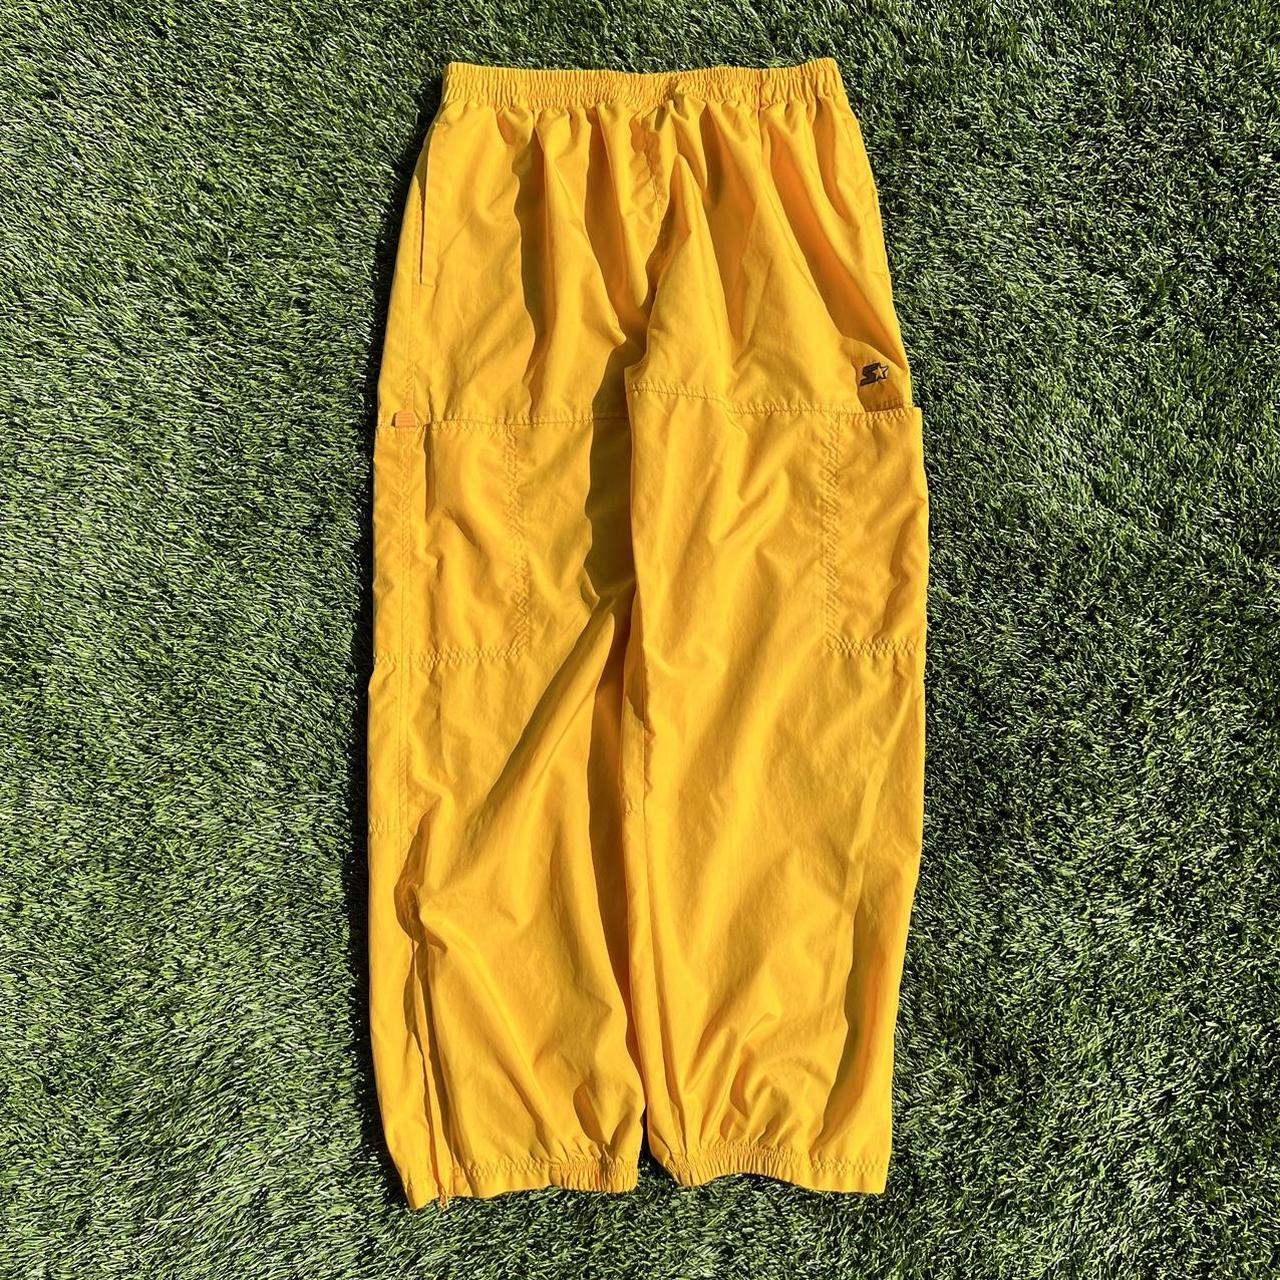 Sick Vintage Baggy Starter Track Pants Size large... - Depop